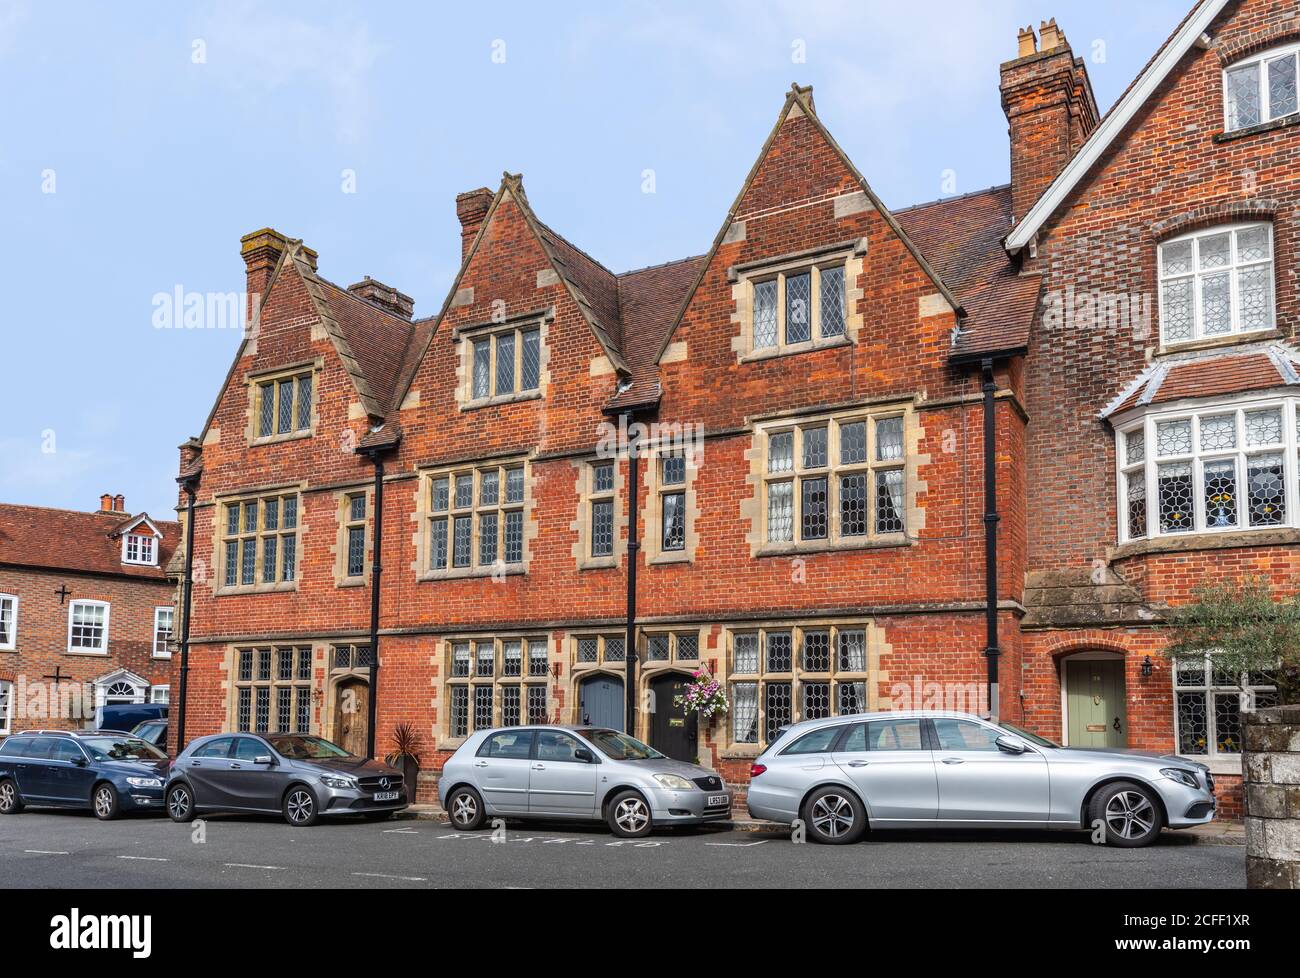 Catégorie II classée brique rouge 3 étages maison de ville terrasse construite en 1880 par l'architecte J A Hansom dans la rue Maltravers à Arundel, West Sussex, Angleterre, Royaume-Uni. Banque D'Images